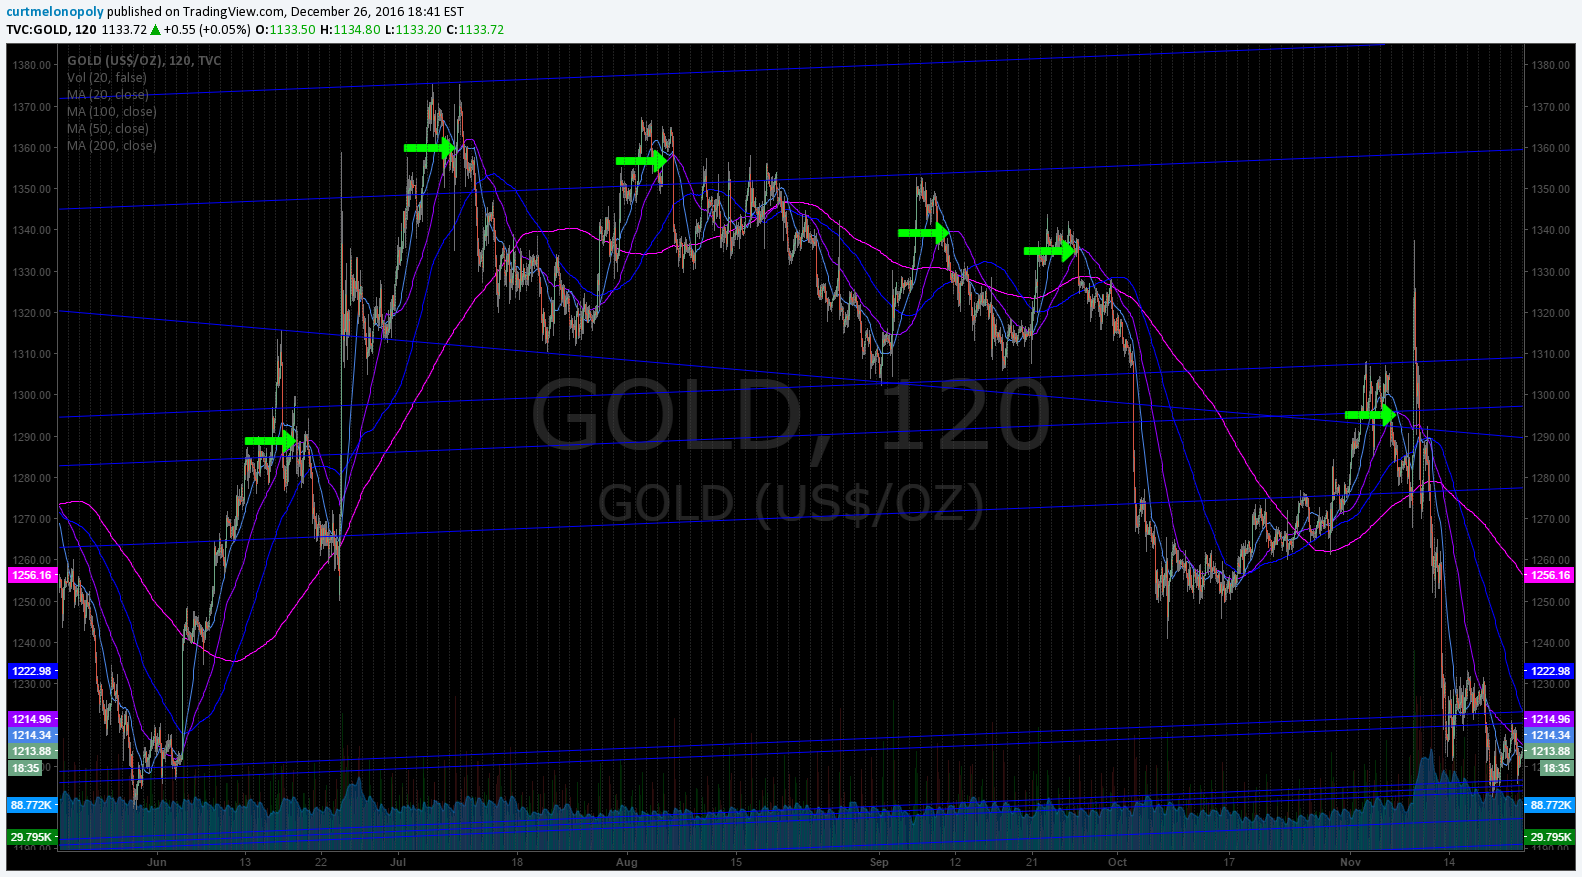 50 MA, 20 MA, Sell Signal, Gold